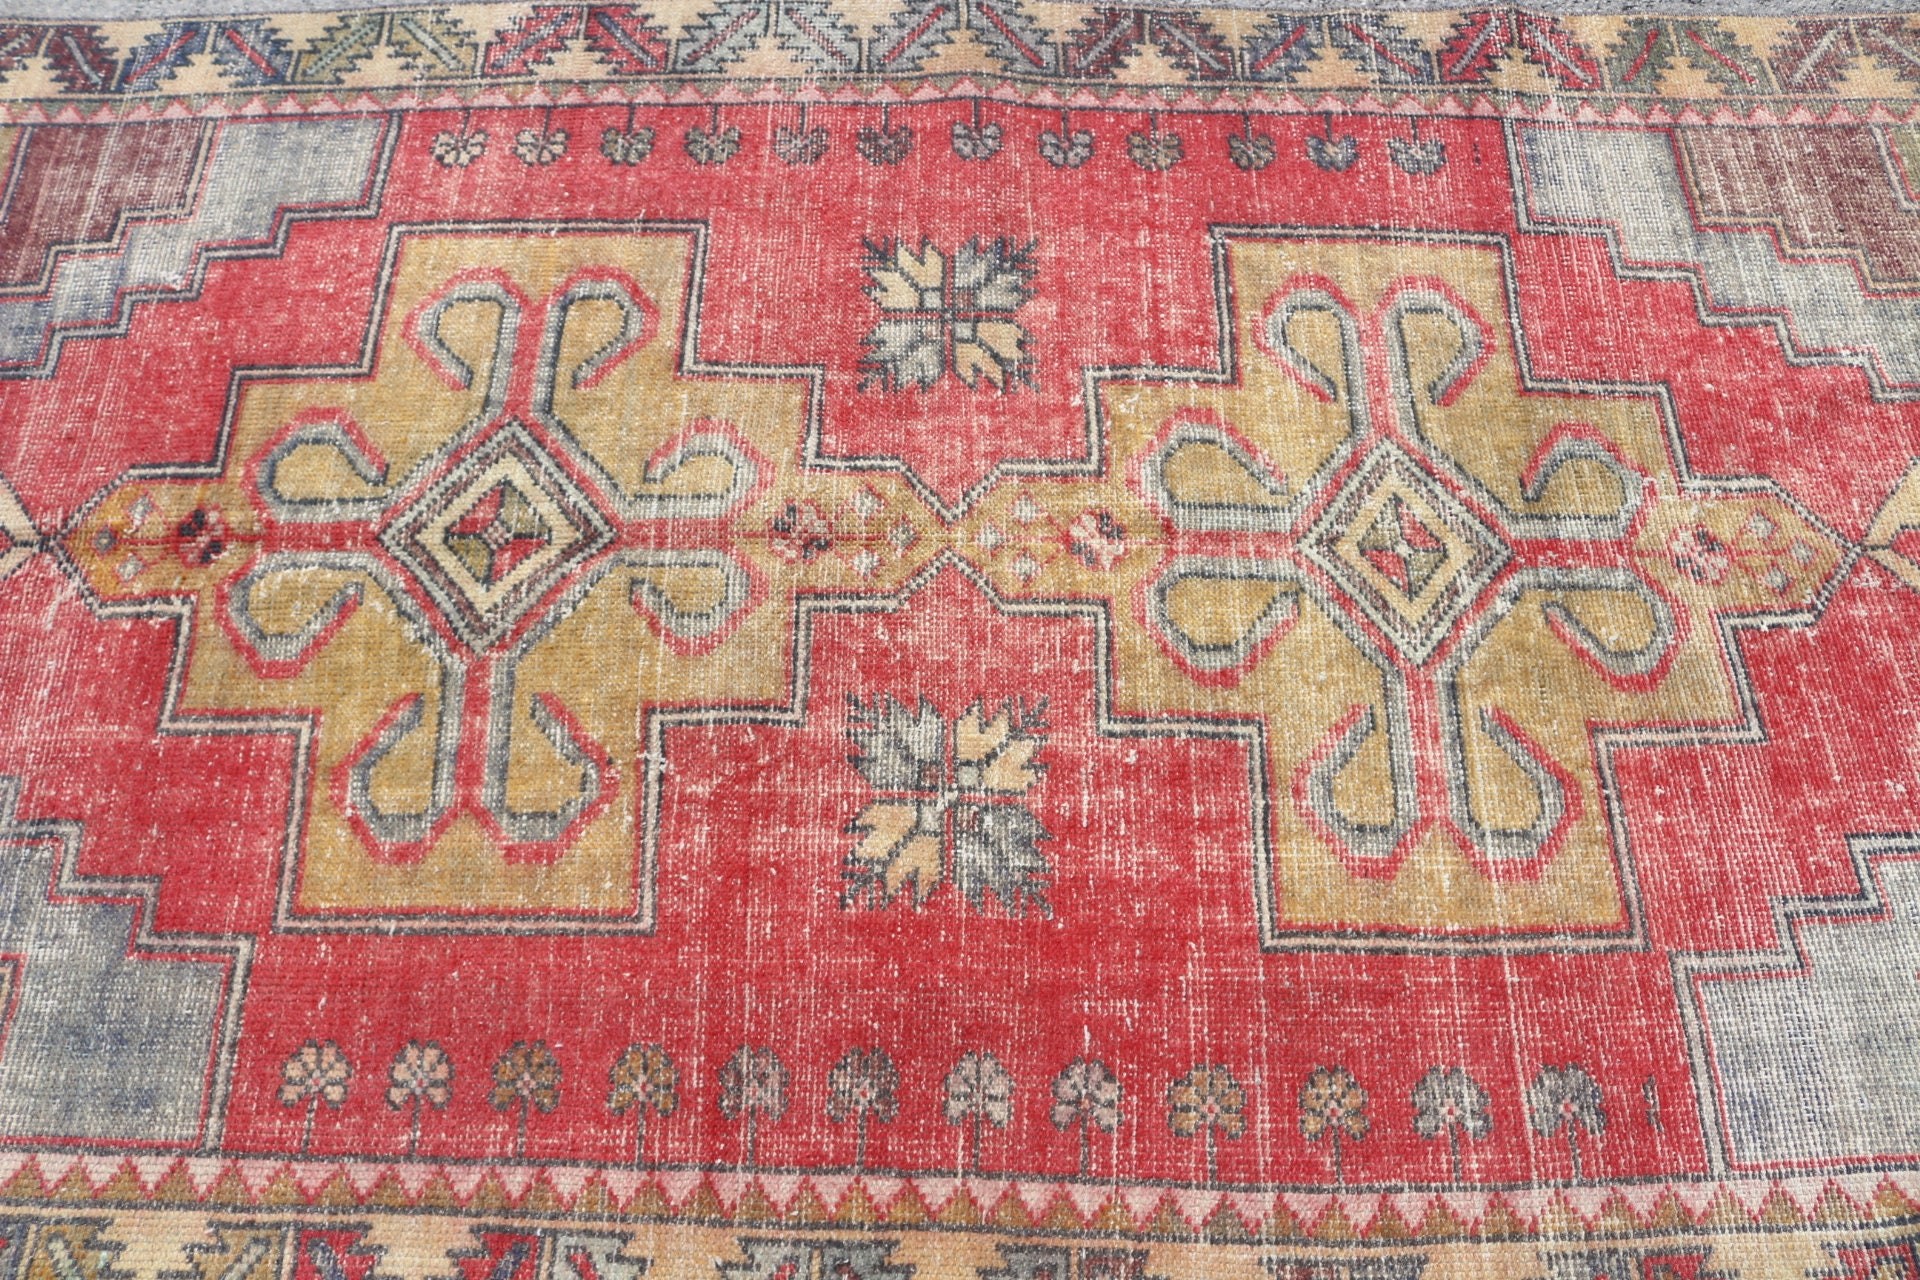 Bedroom Rug, Antique Rug, Dining Room Rugs, Turkish Rug, 4.3x9.1 ft Area Rug, Vintage Rugs, Rugs for Nursery, Wool Rug, Red Oriental Rugs